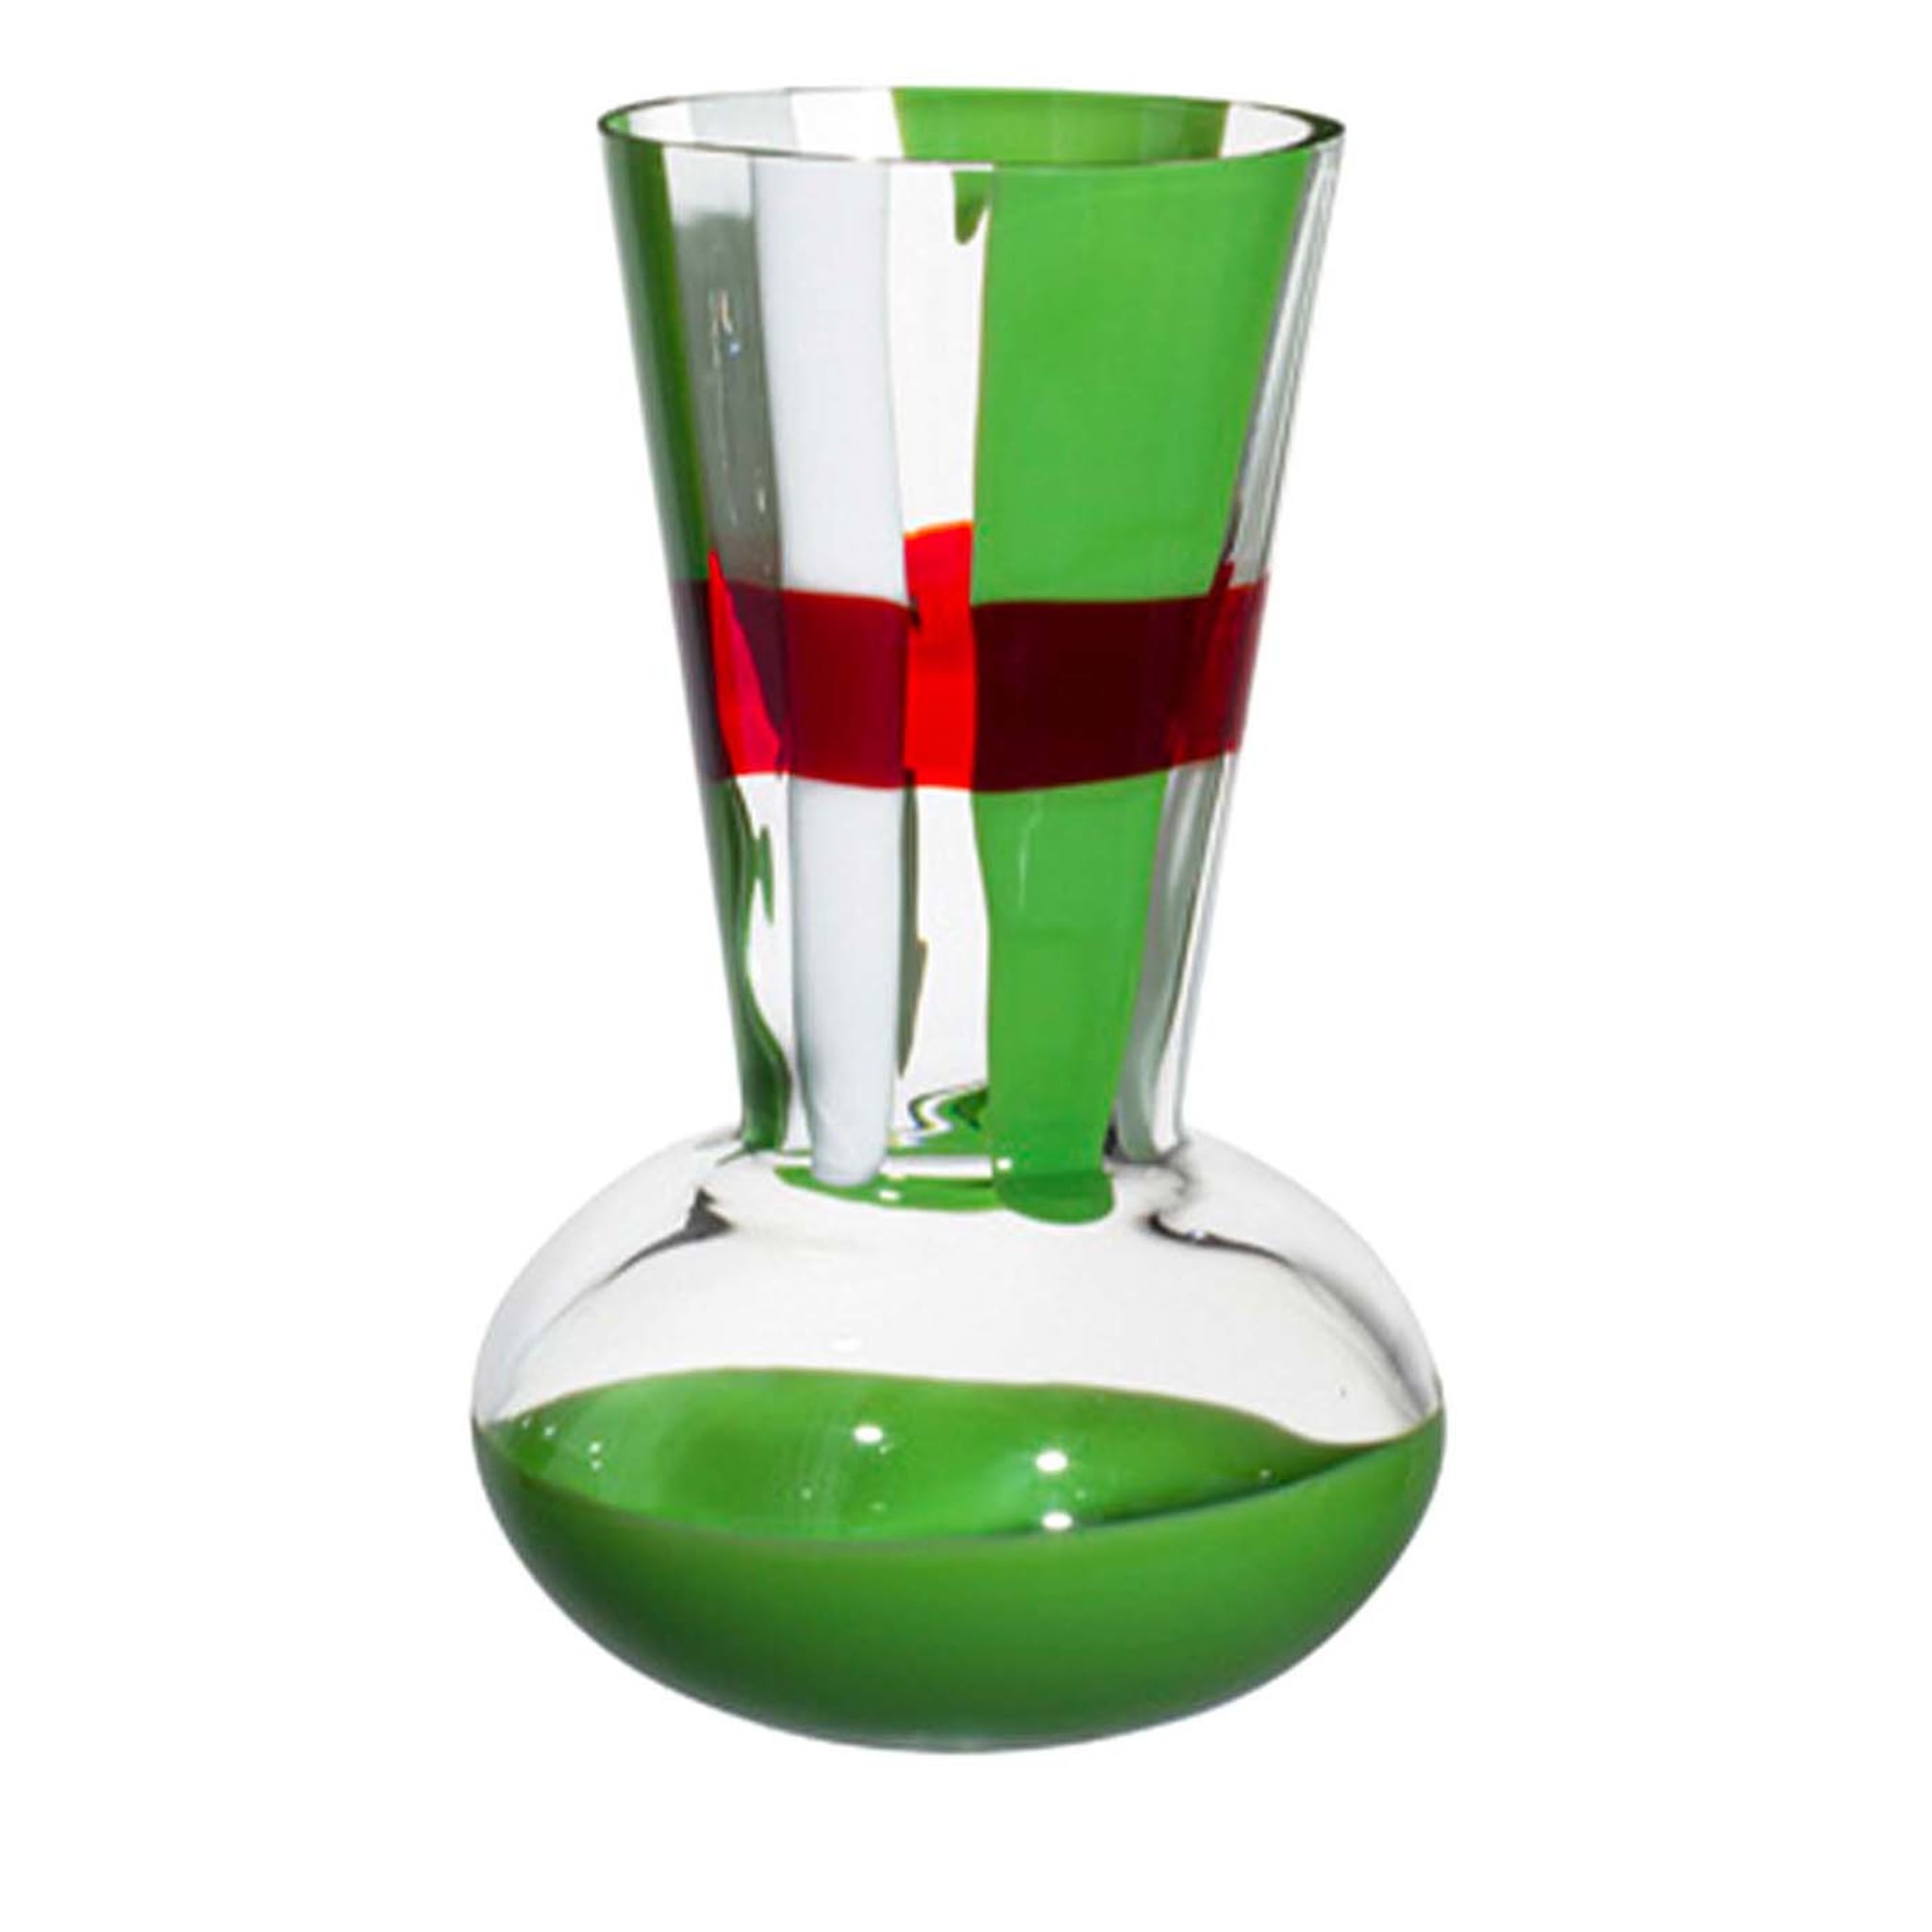 Vase à rayures vertes, blanches et rouges Troncosfera de Carlo Moretti - Vue principale